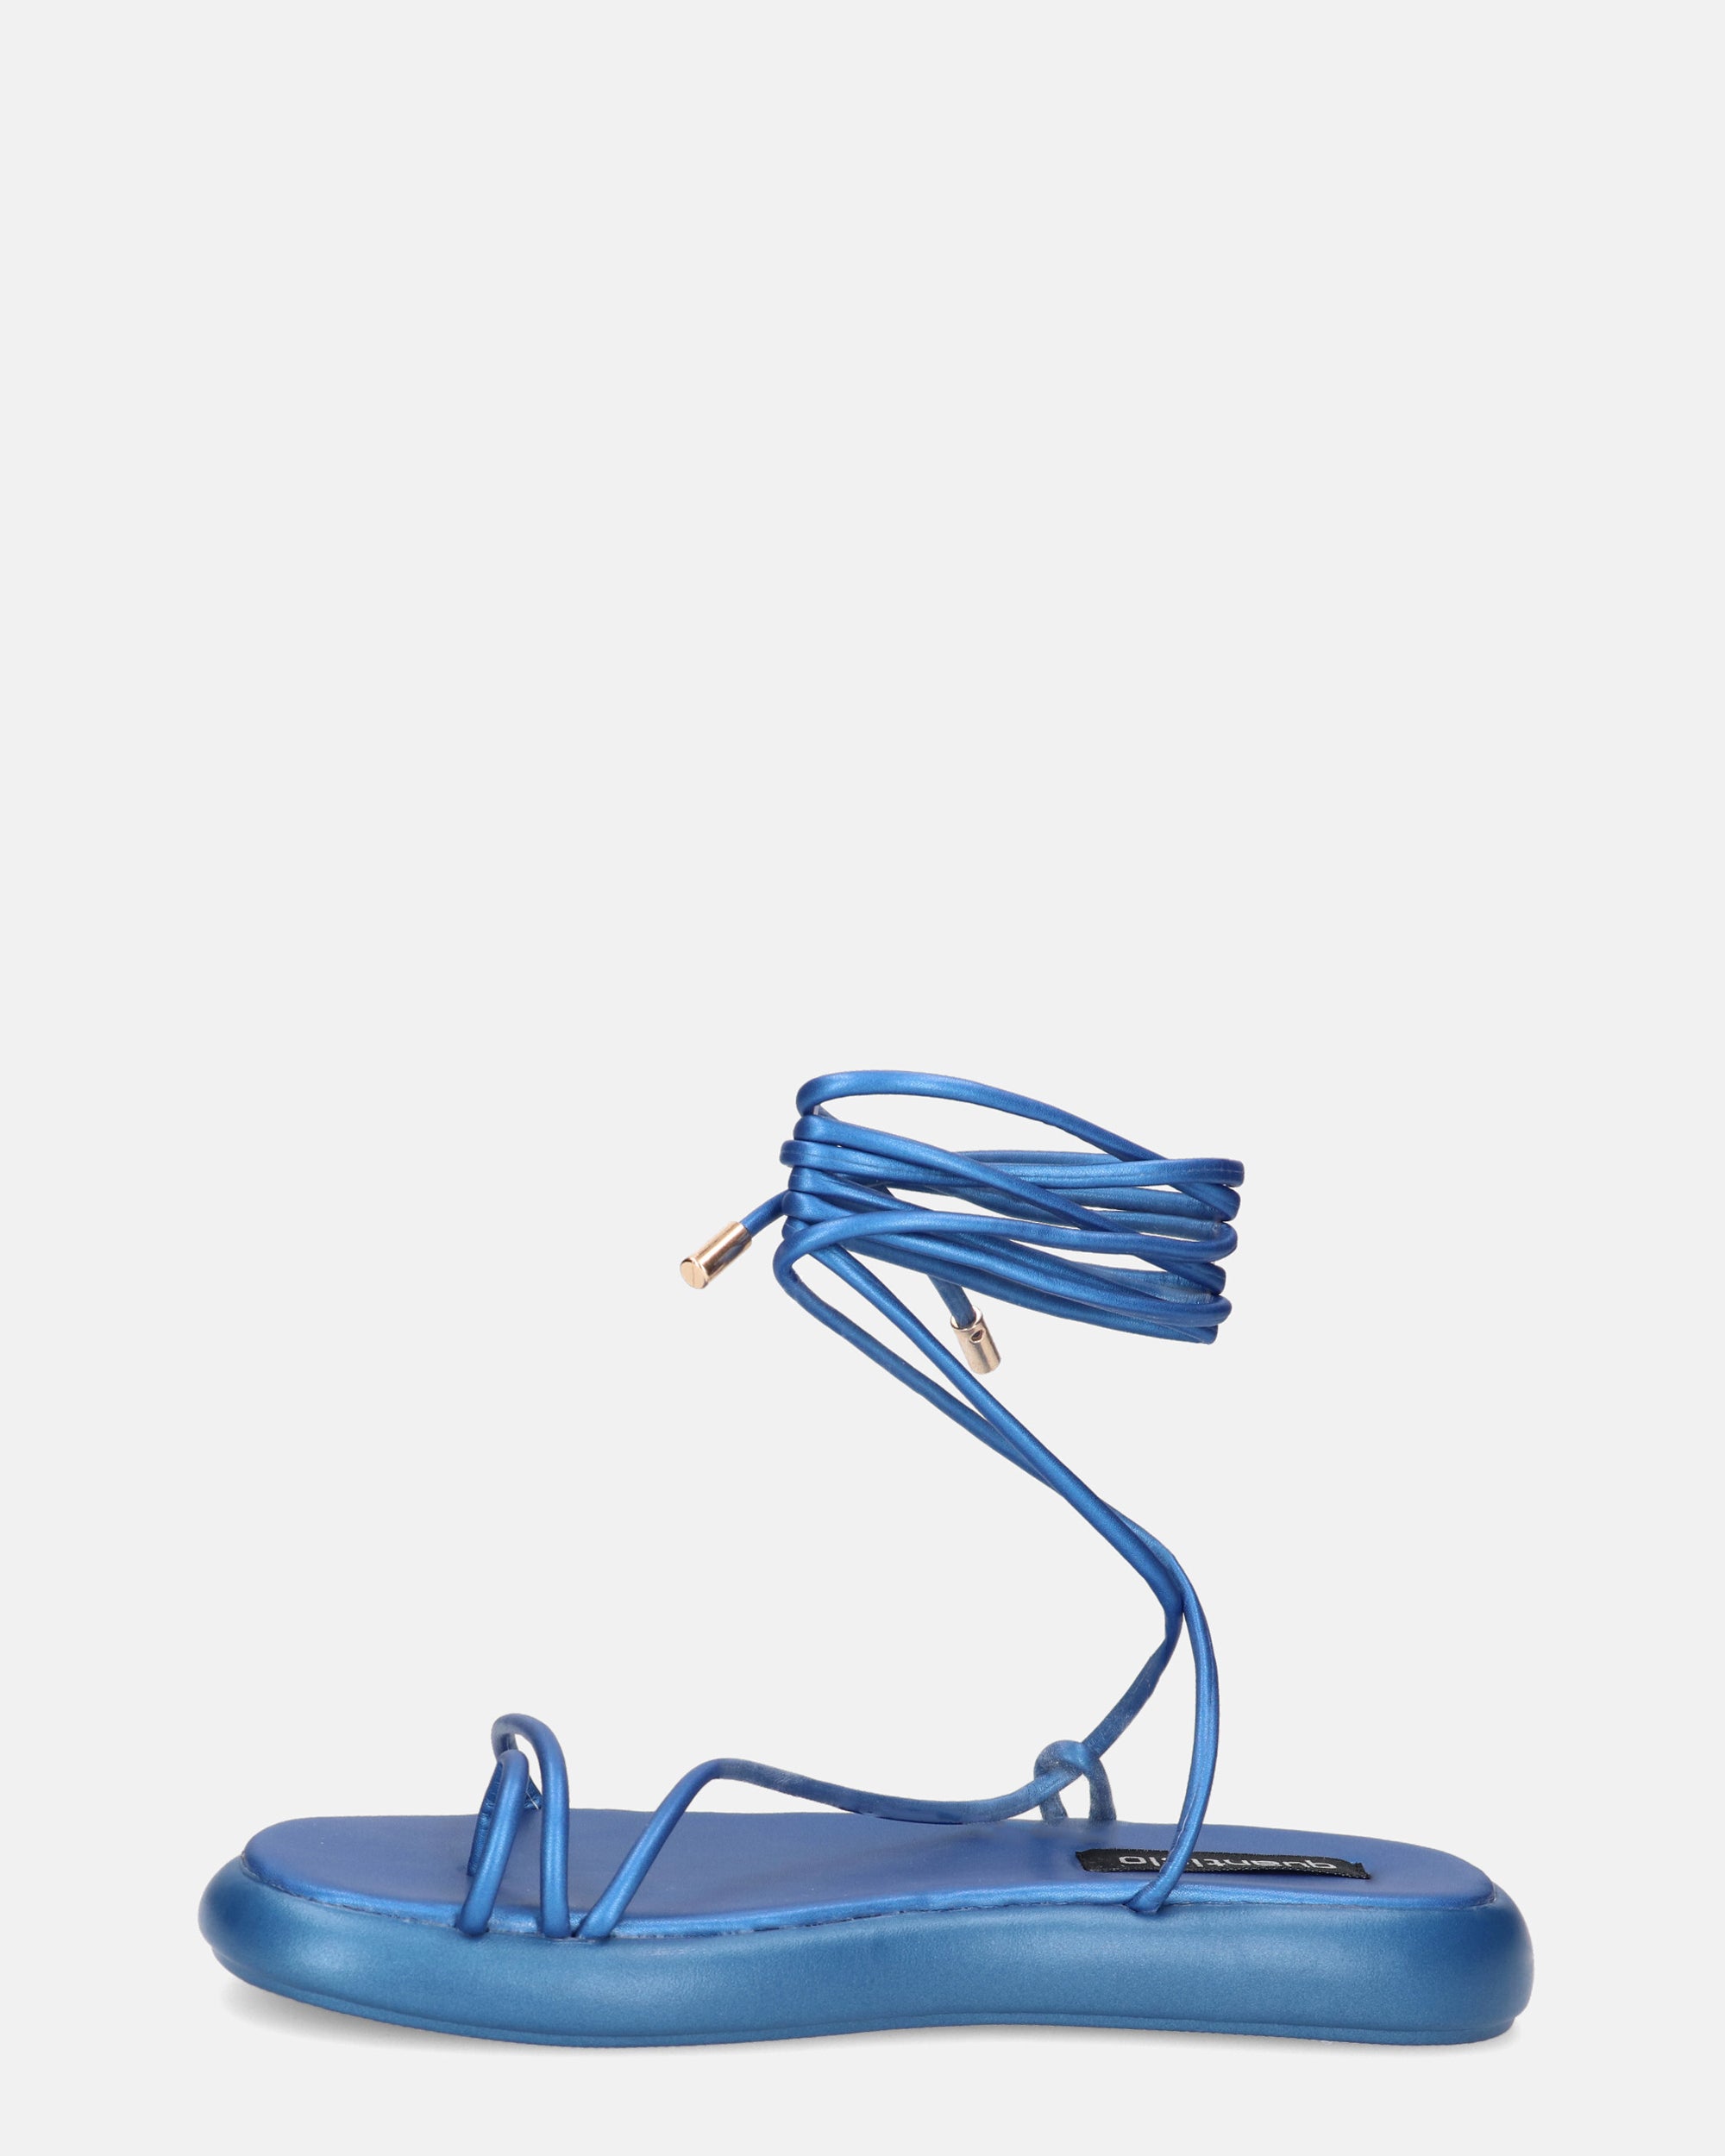 LACEY - sandali infradito bassi blu con lacci